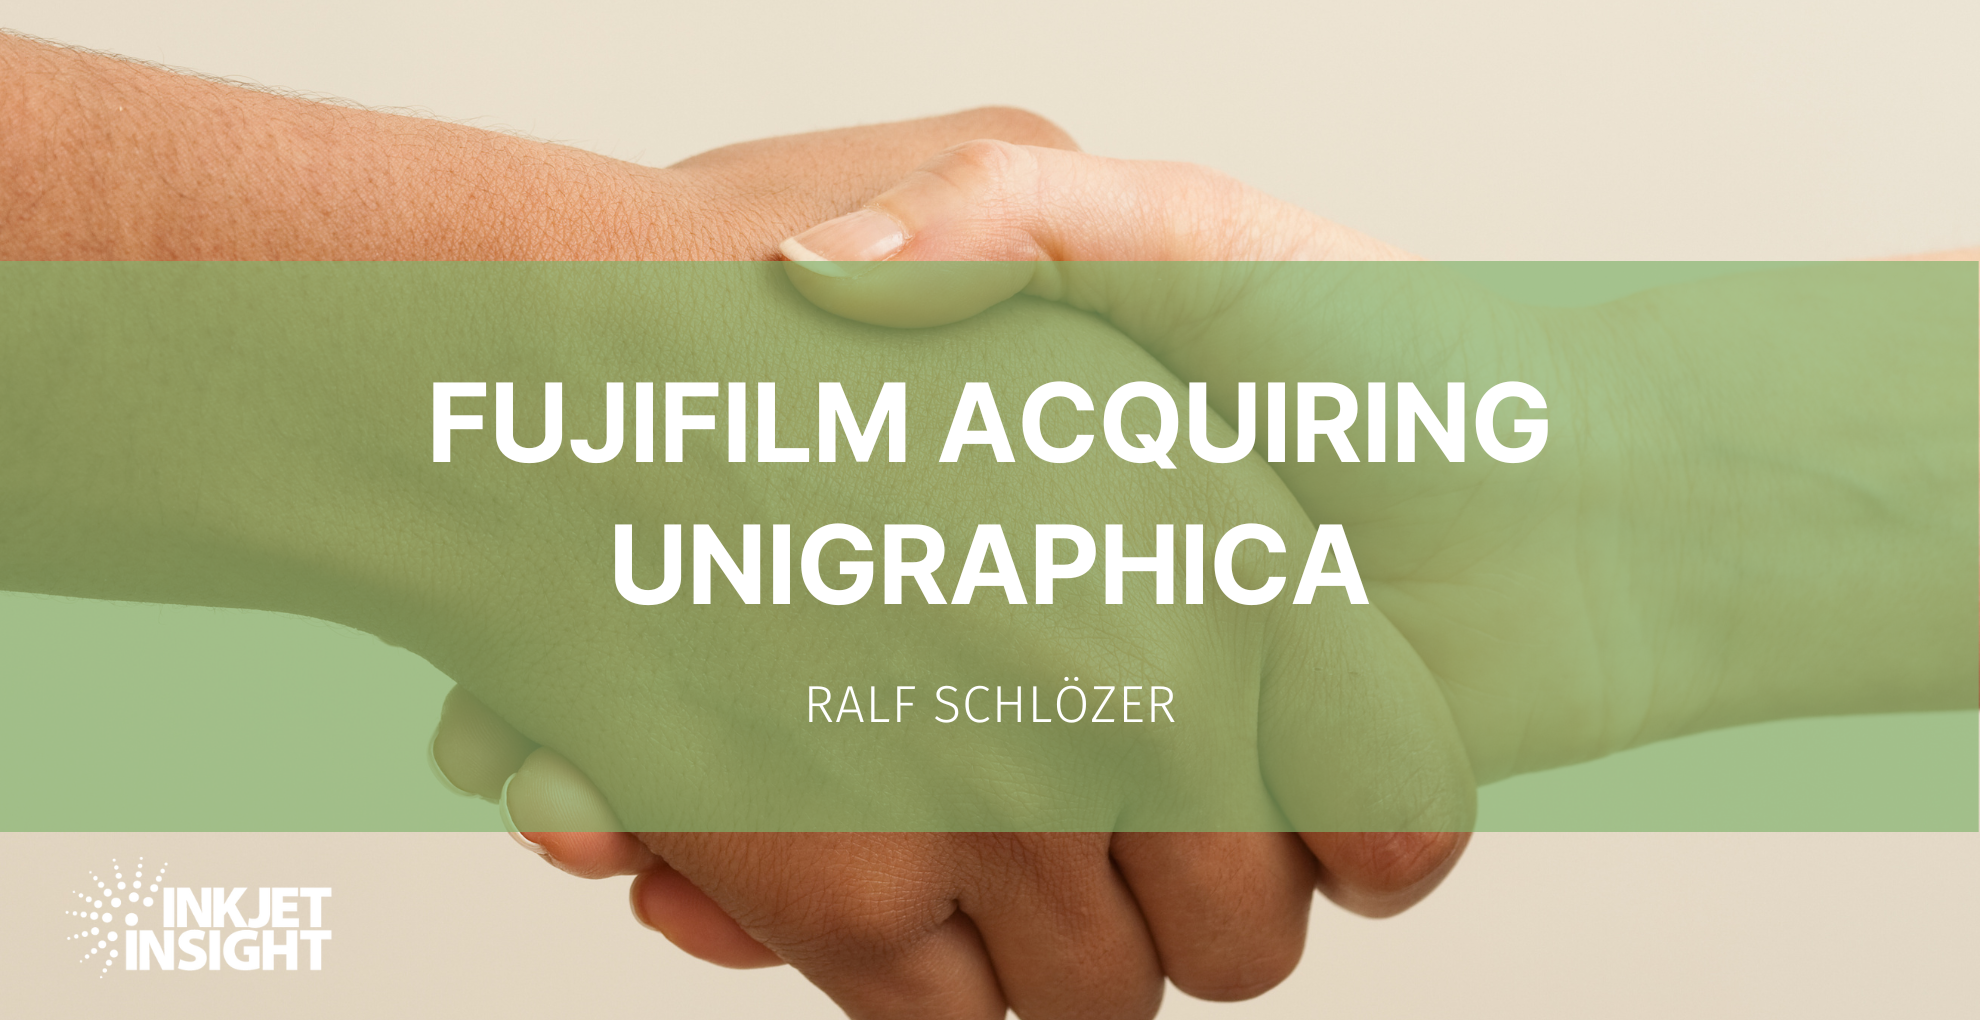 Featured image for “Fujifilm Acquiring Unigraphica”